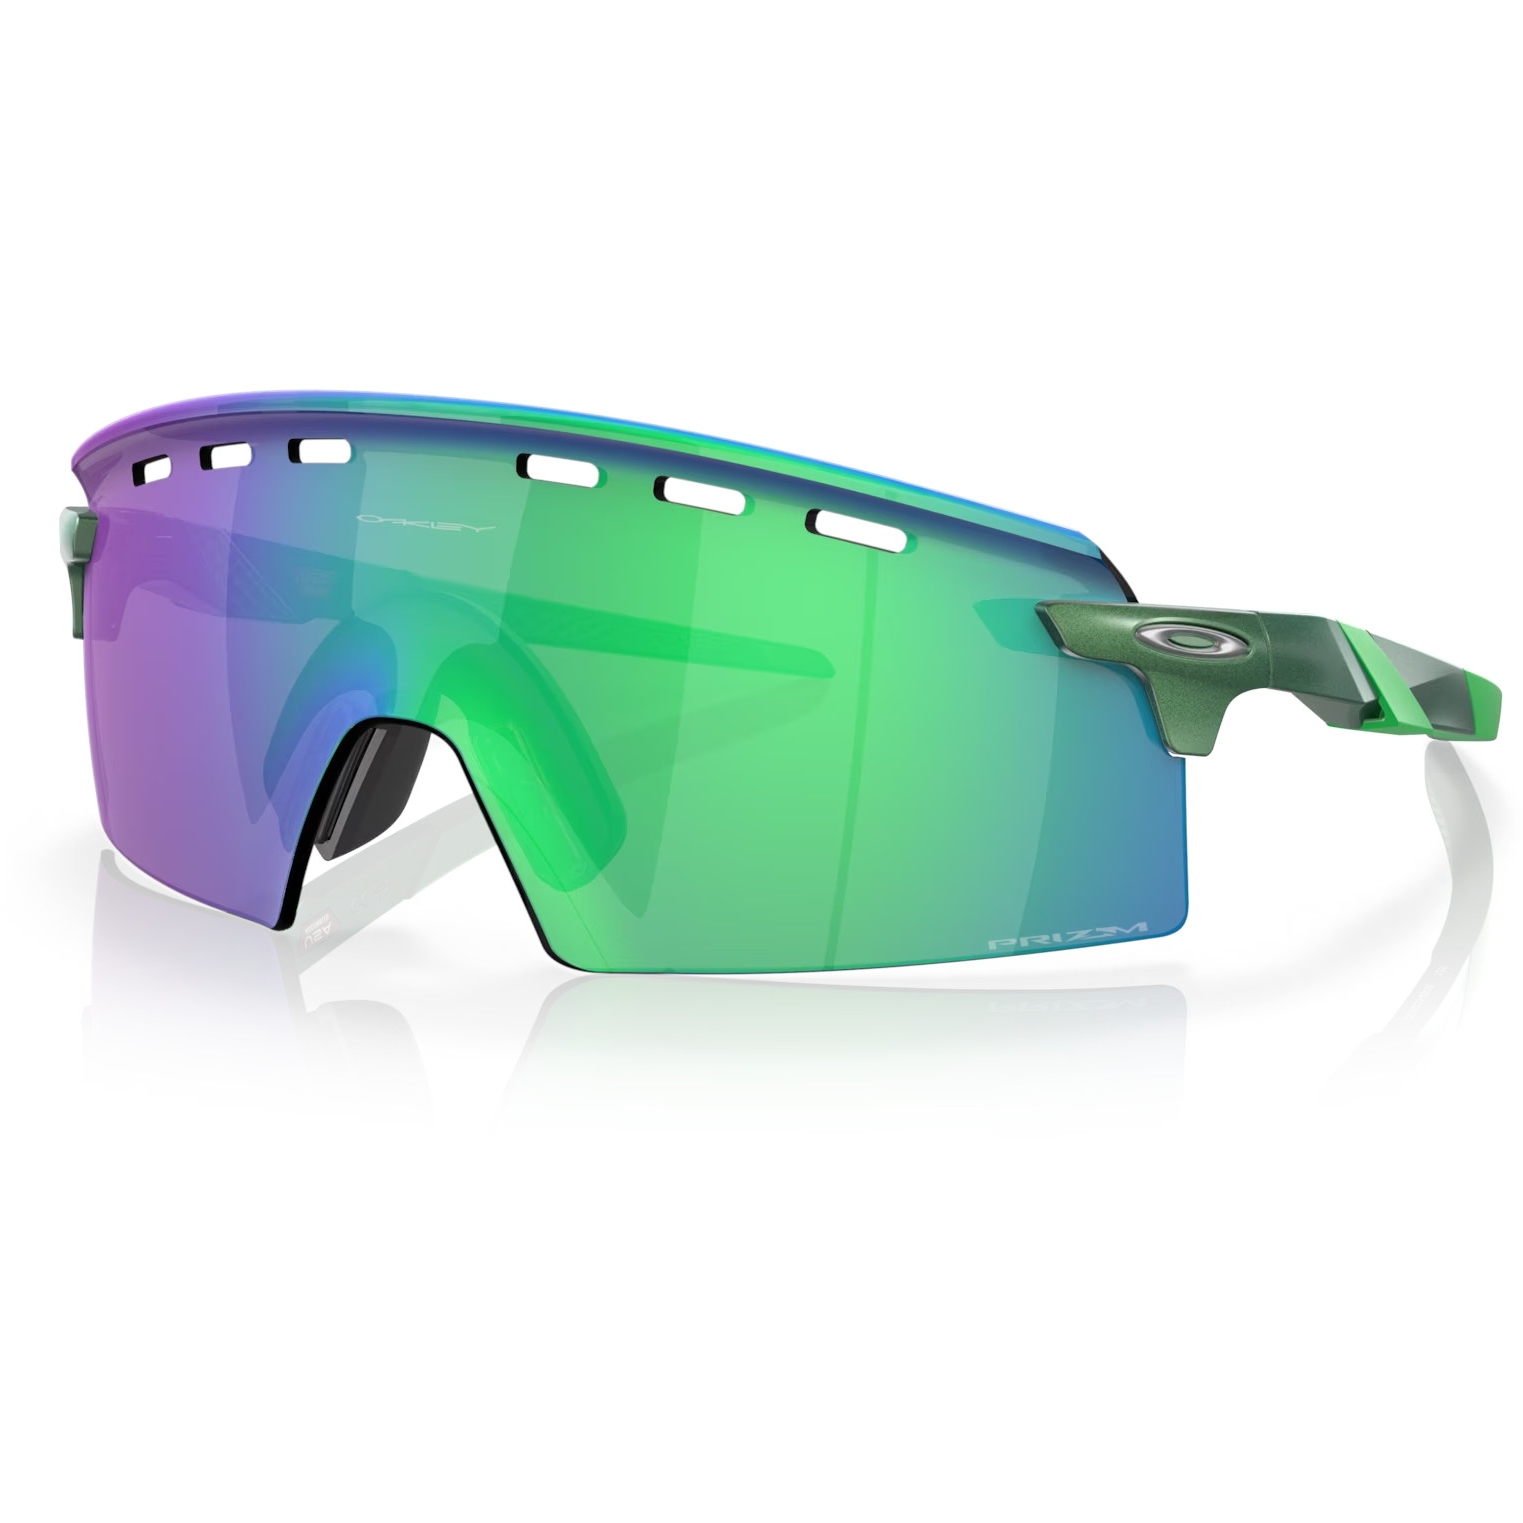 Produktbild von Oakley Encoder Strike Brille - Gamma Green/Prizm Jade - OO9235-0439